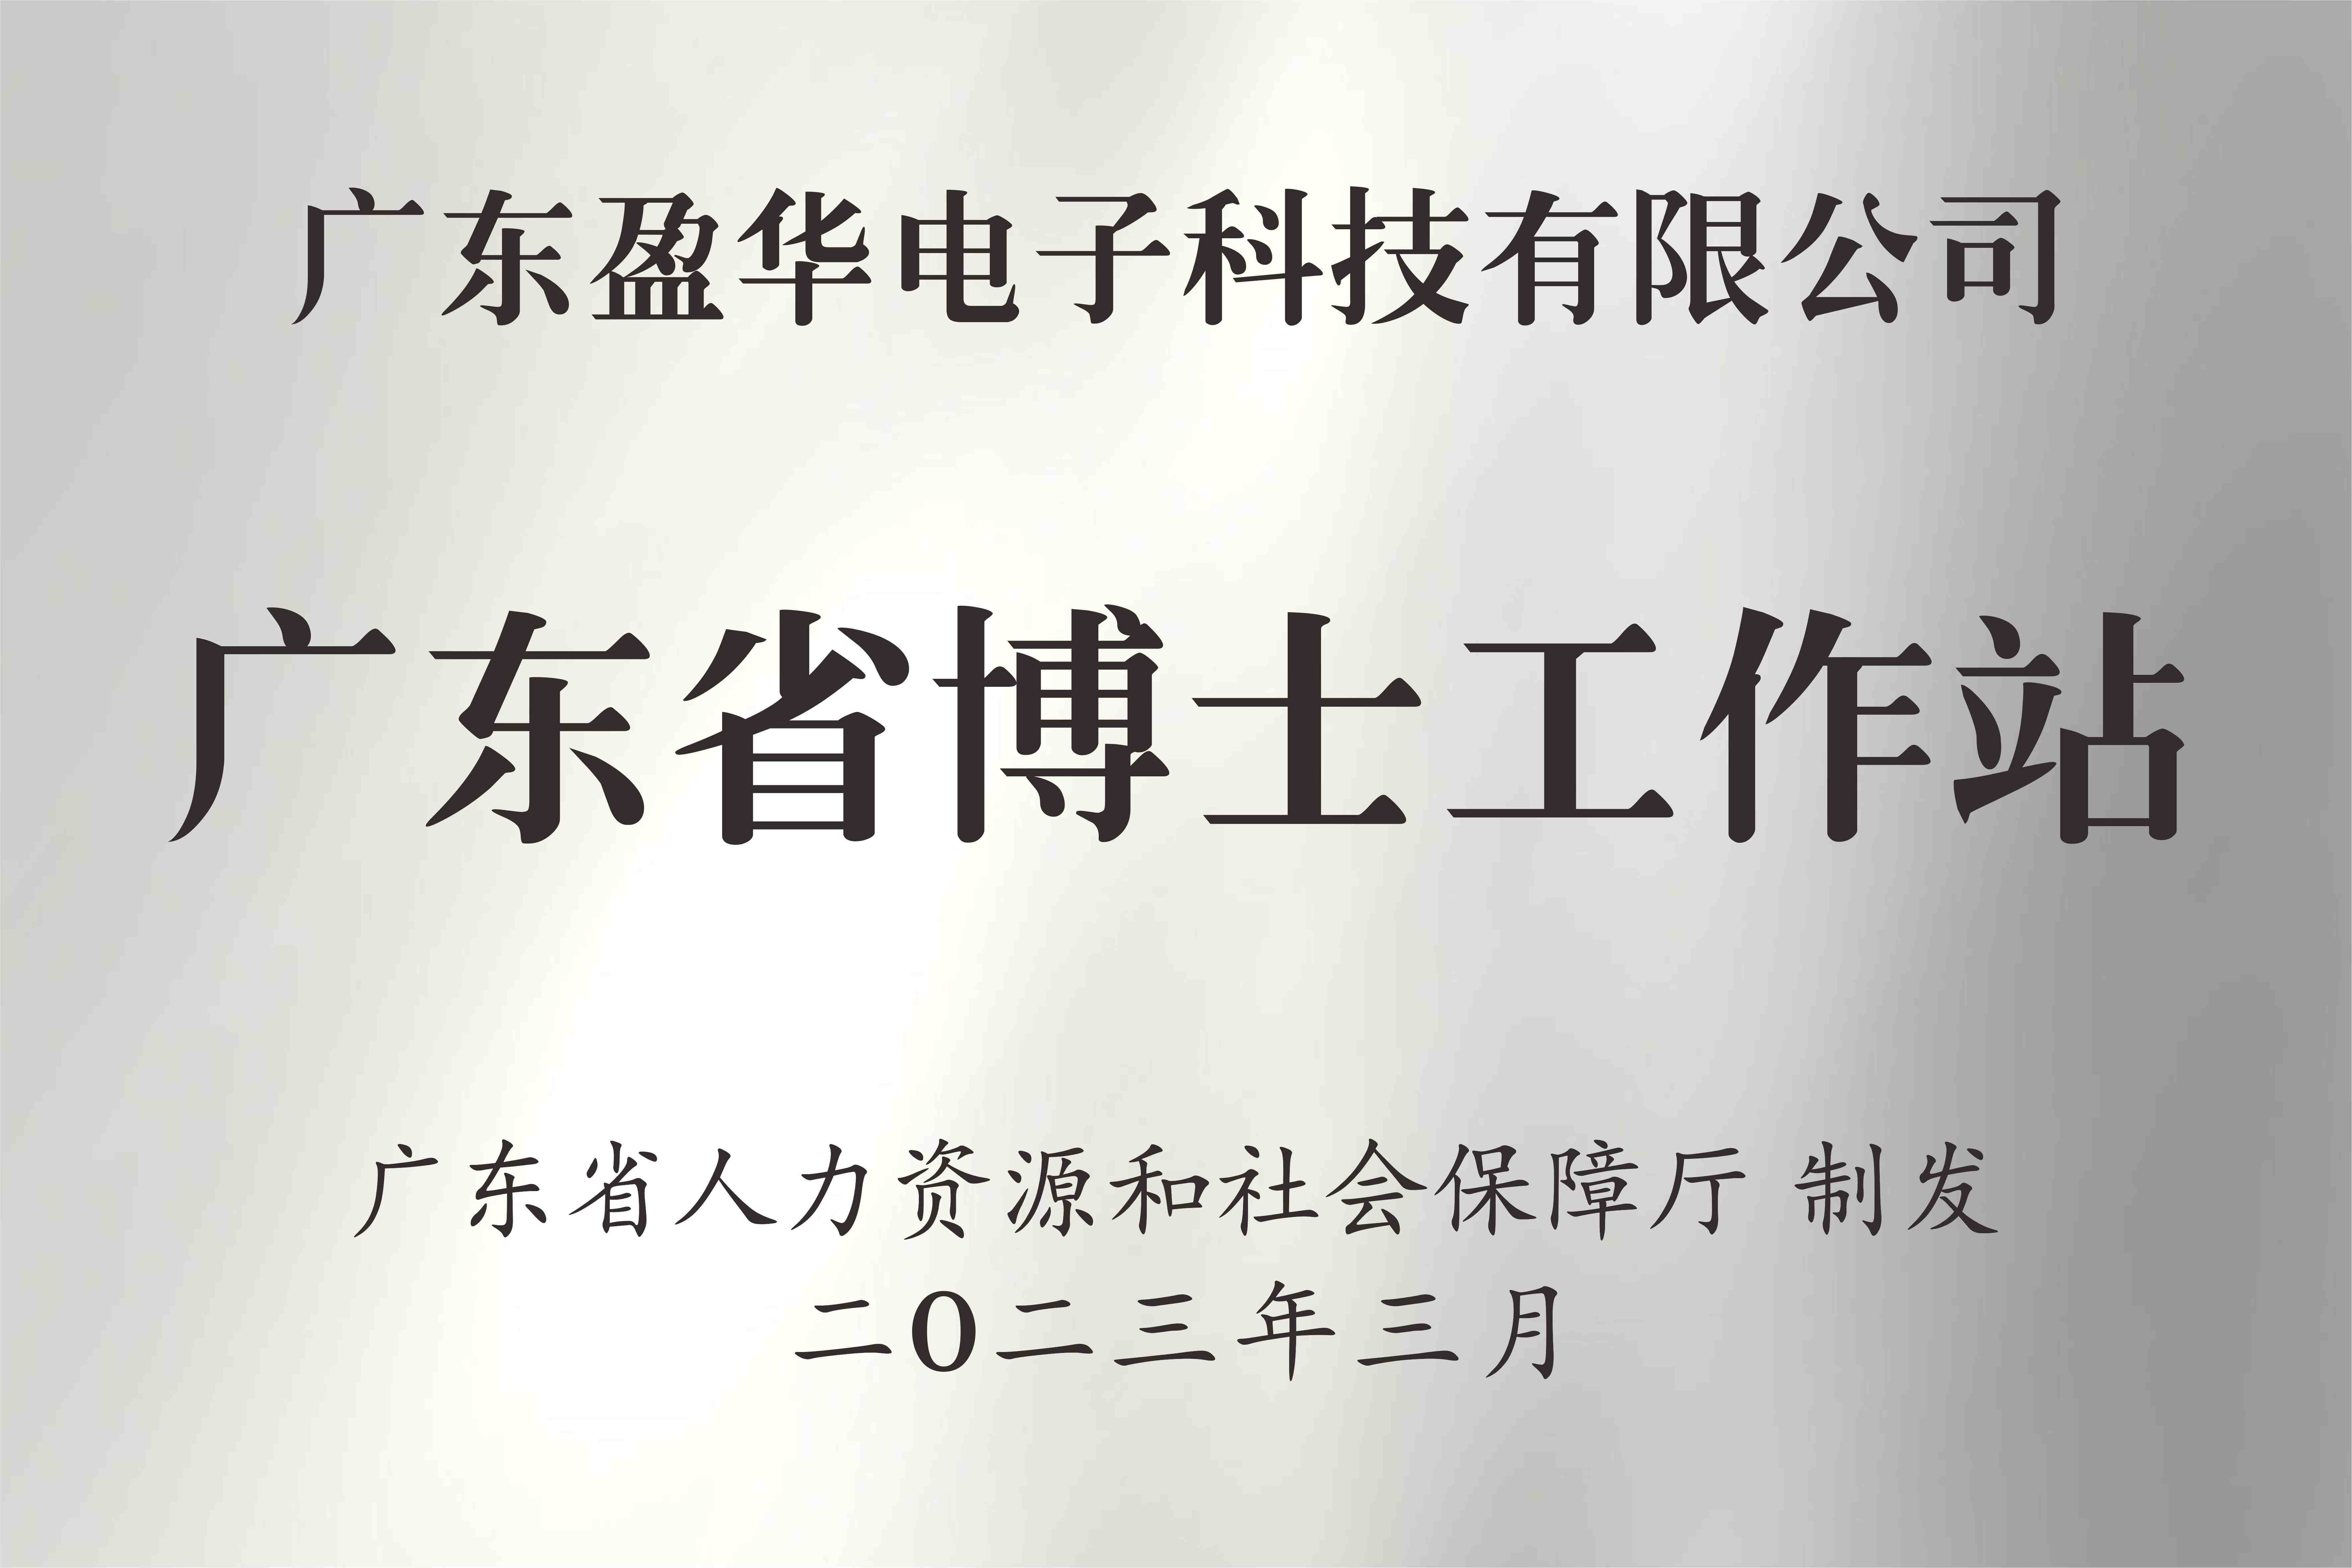 喜訊丨廣東盈華電子科技有限公司獲批設立廣東省博士工作站